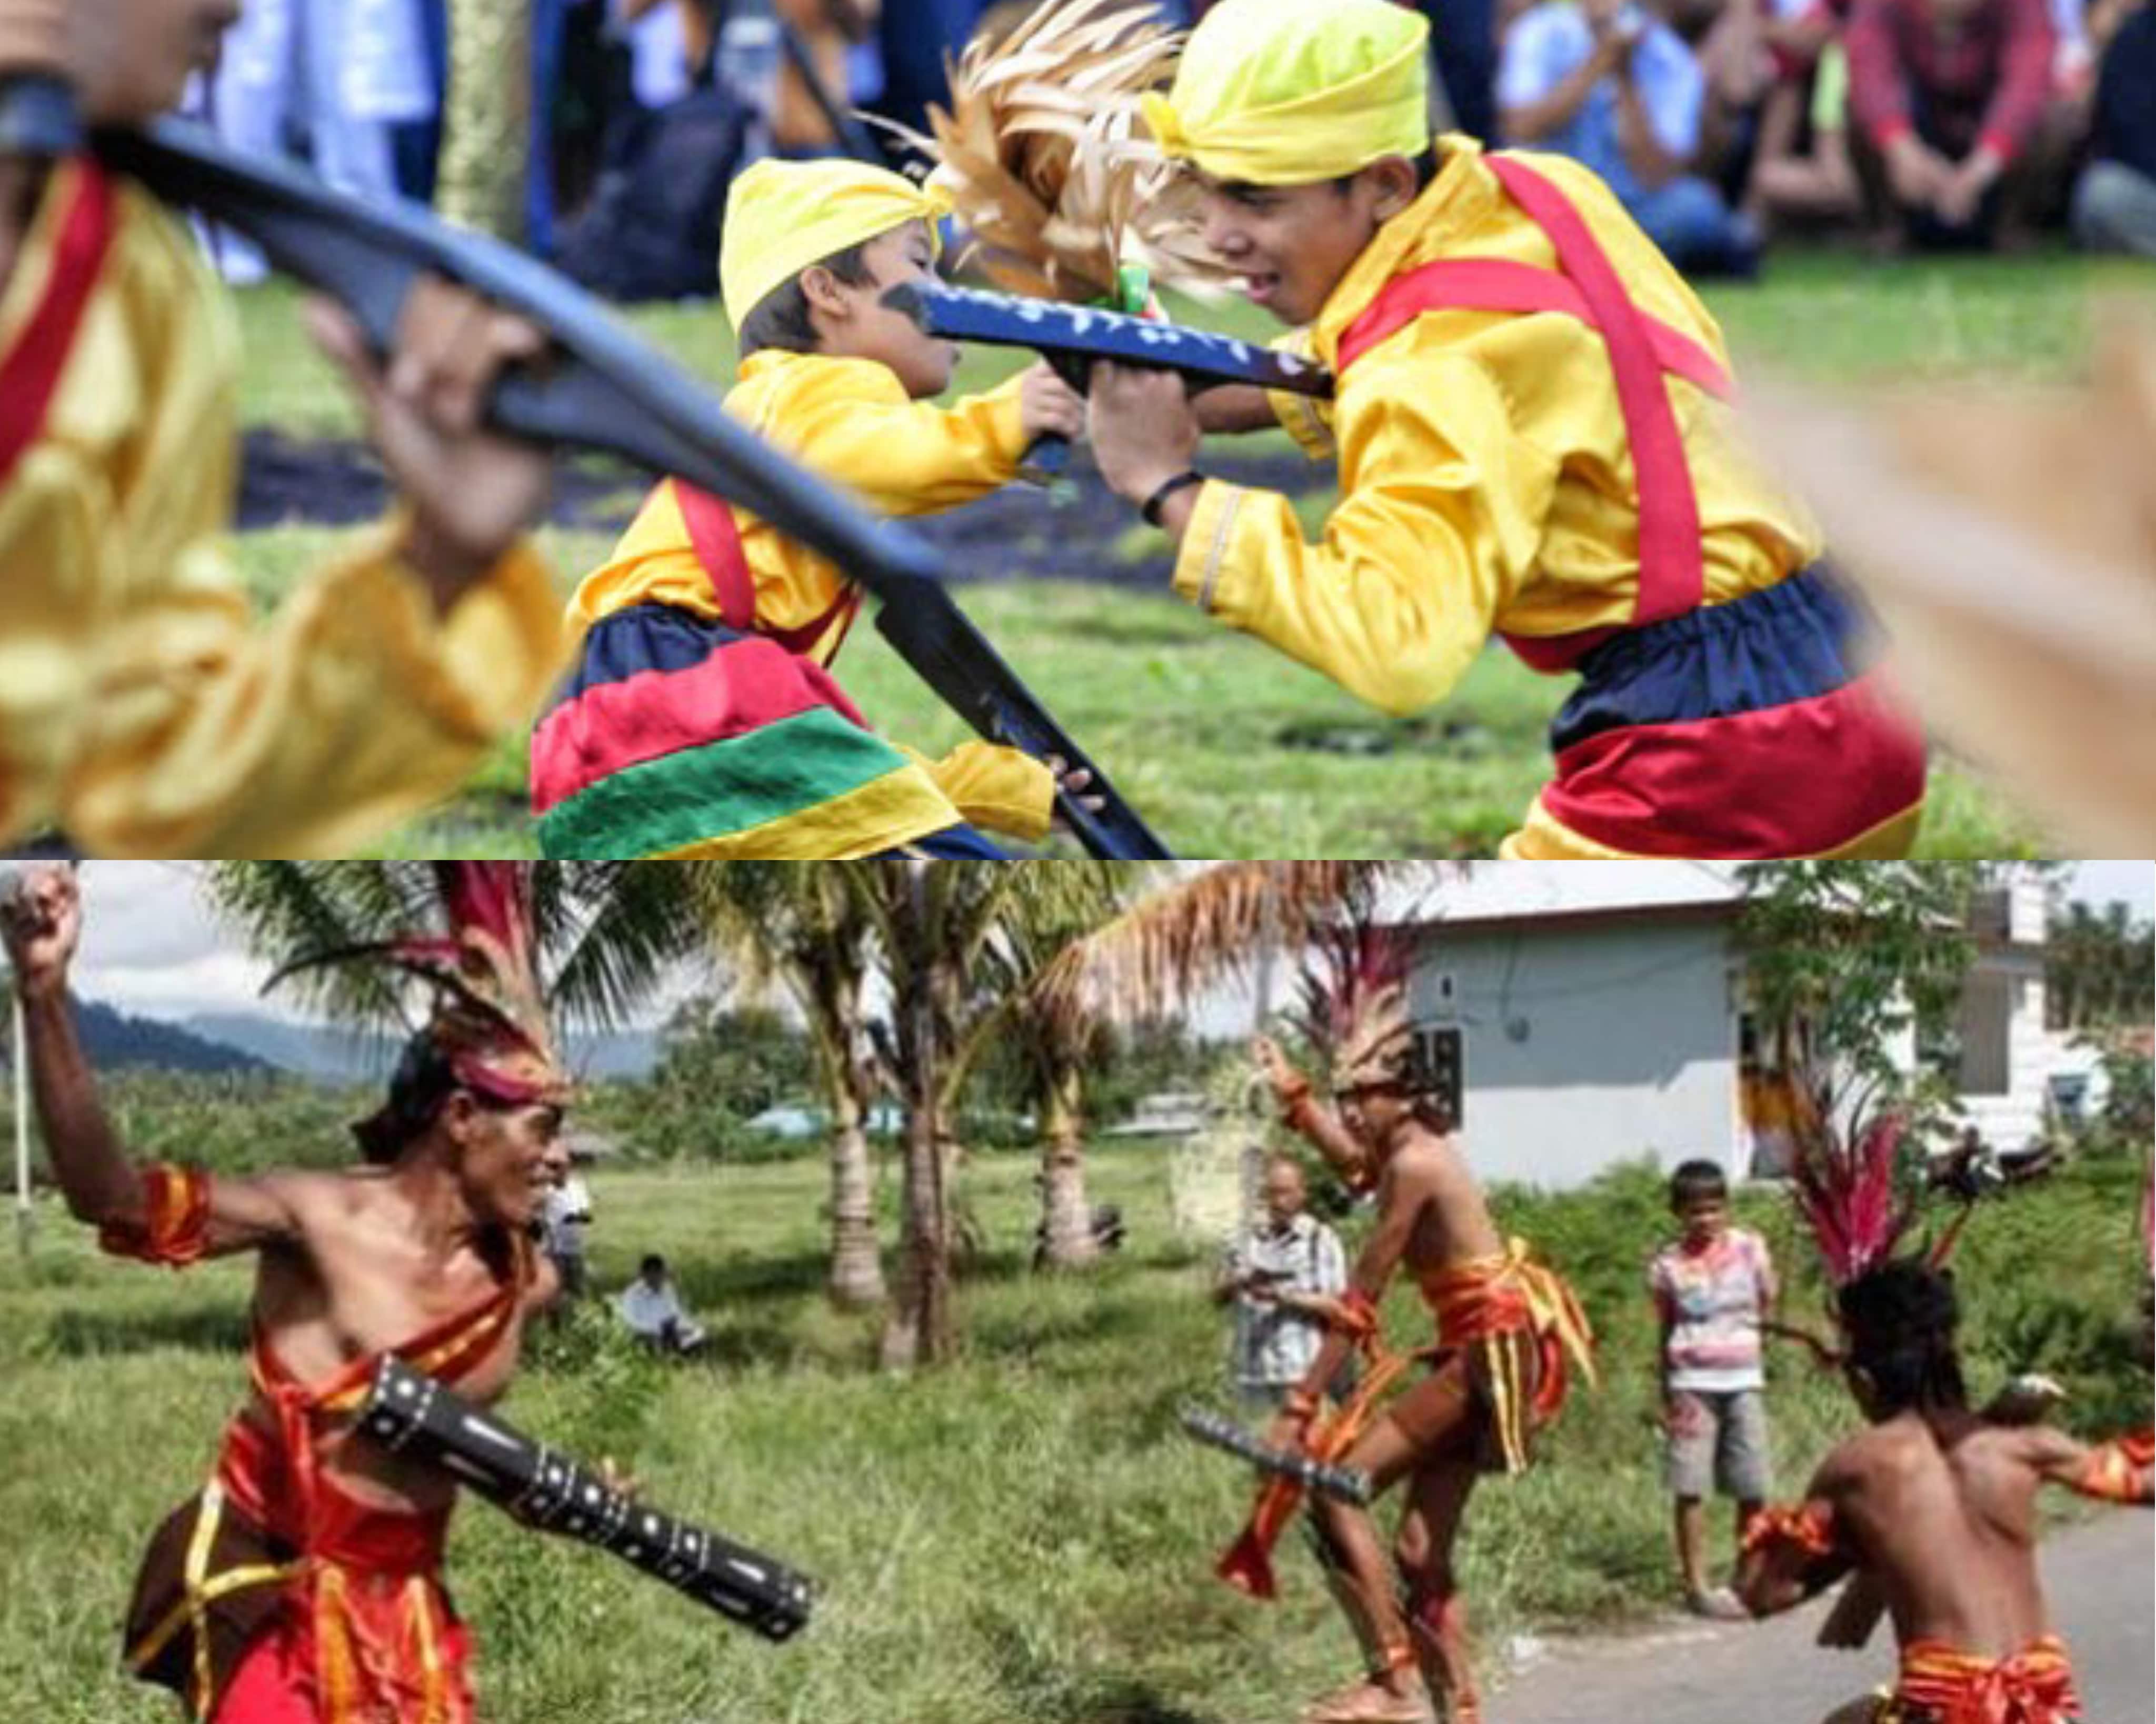 Paling Beda Di Indonesia, Inilah 5 Adat Upacara Menarik Asal Suku di Maluku! 